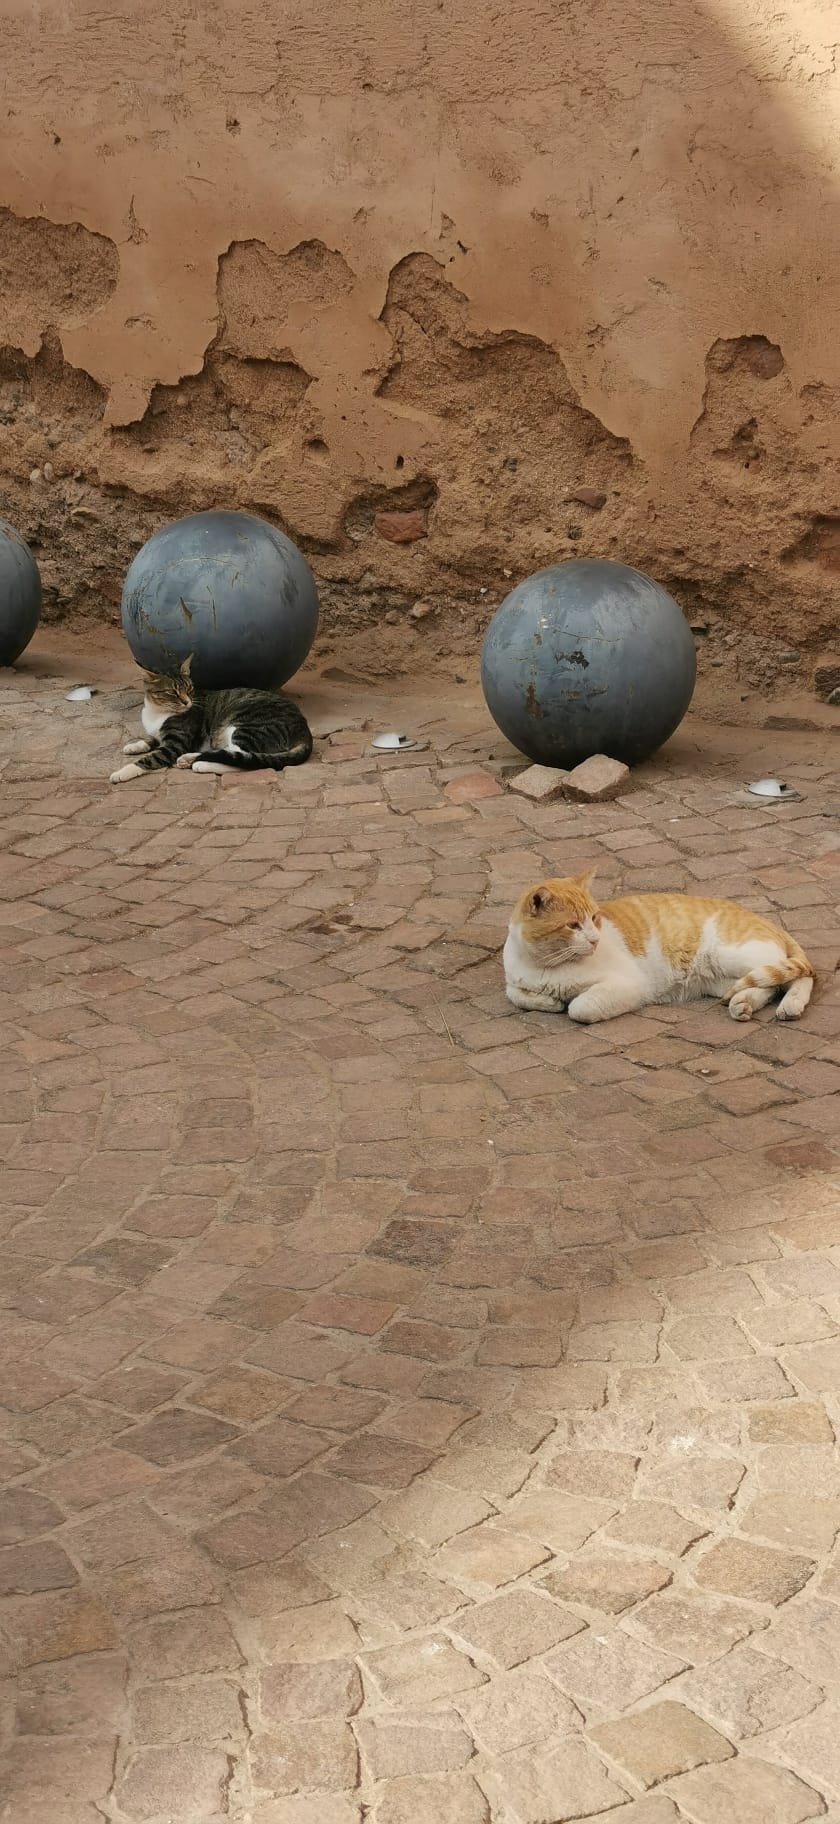 Kočky jsou jedním ze symbolem Marrákeše. Jsou všude, v každé ulici a žerou všechno. Jsou roztomilé, ale radši bych je nehladil. 